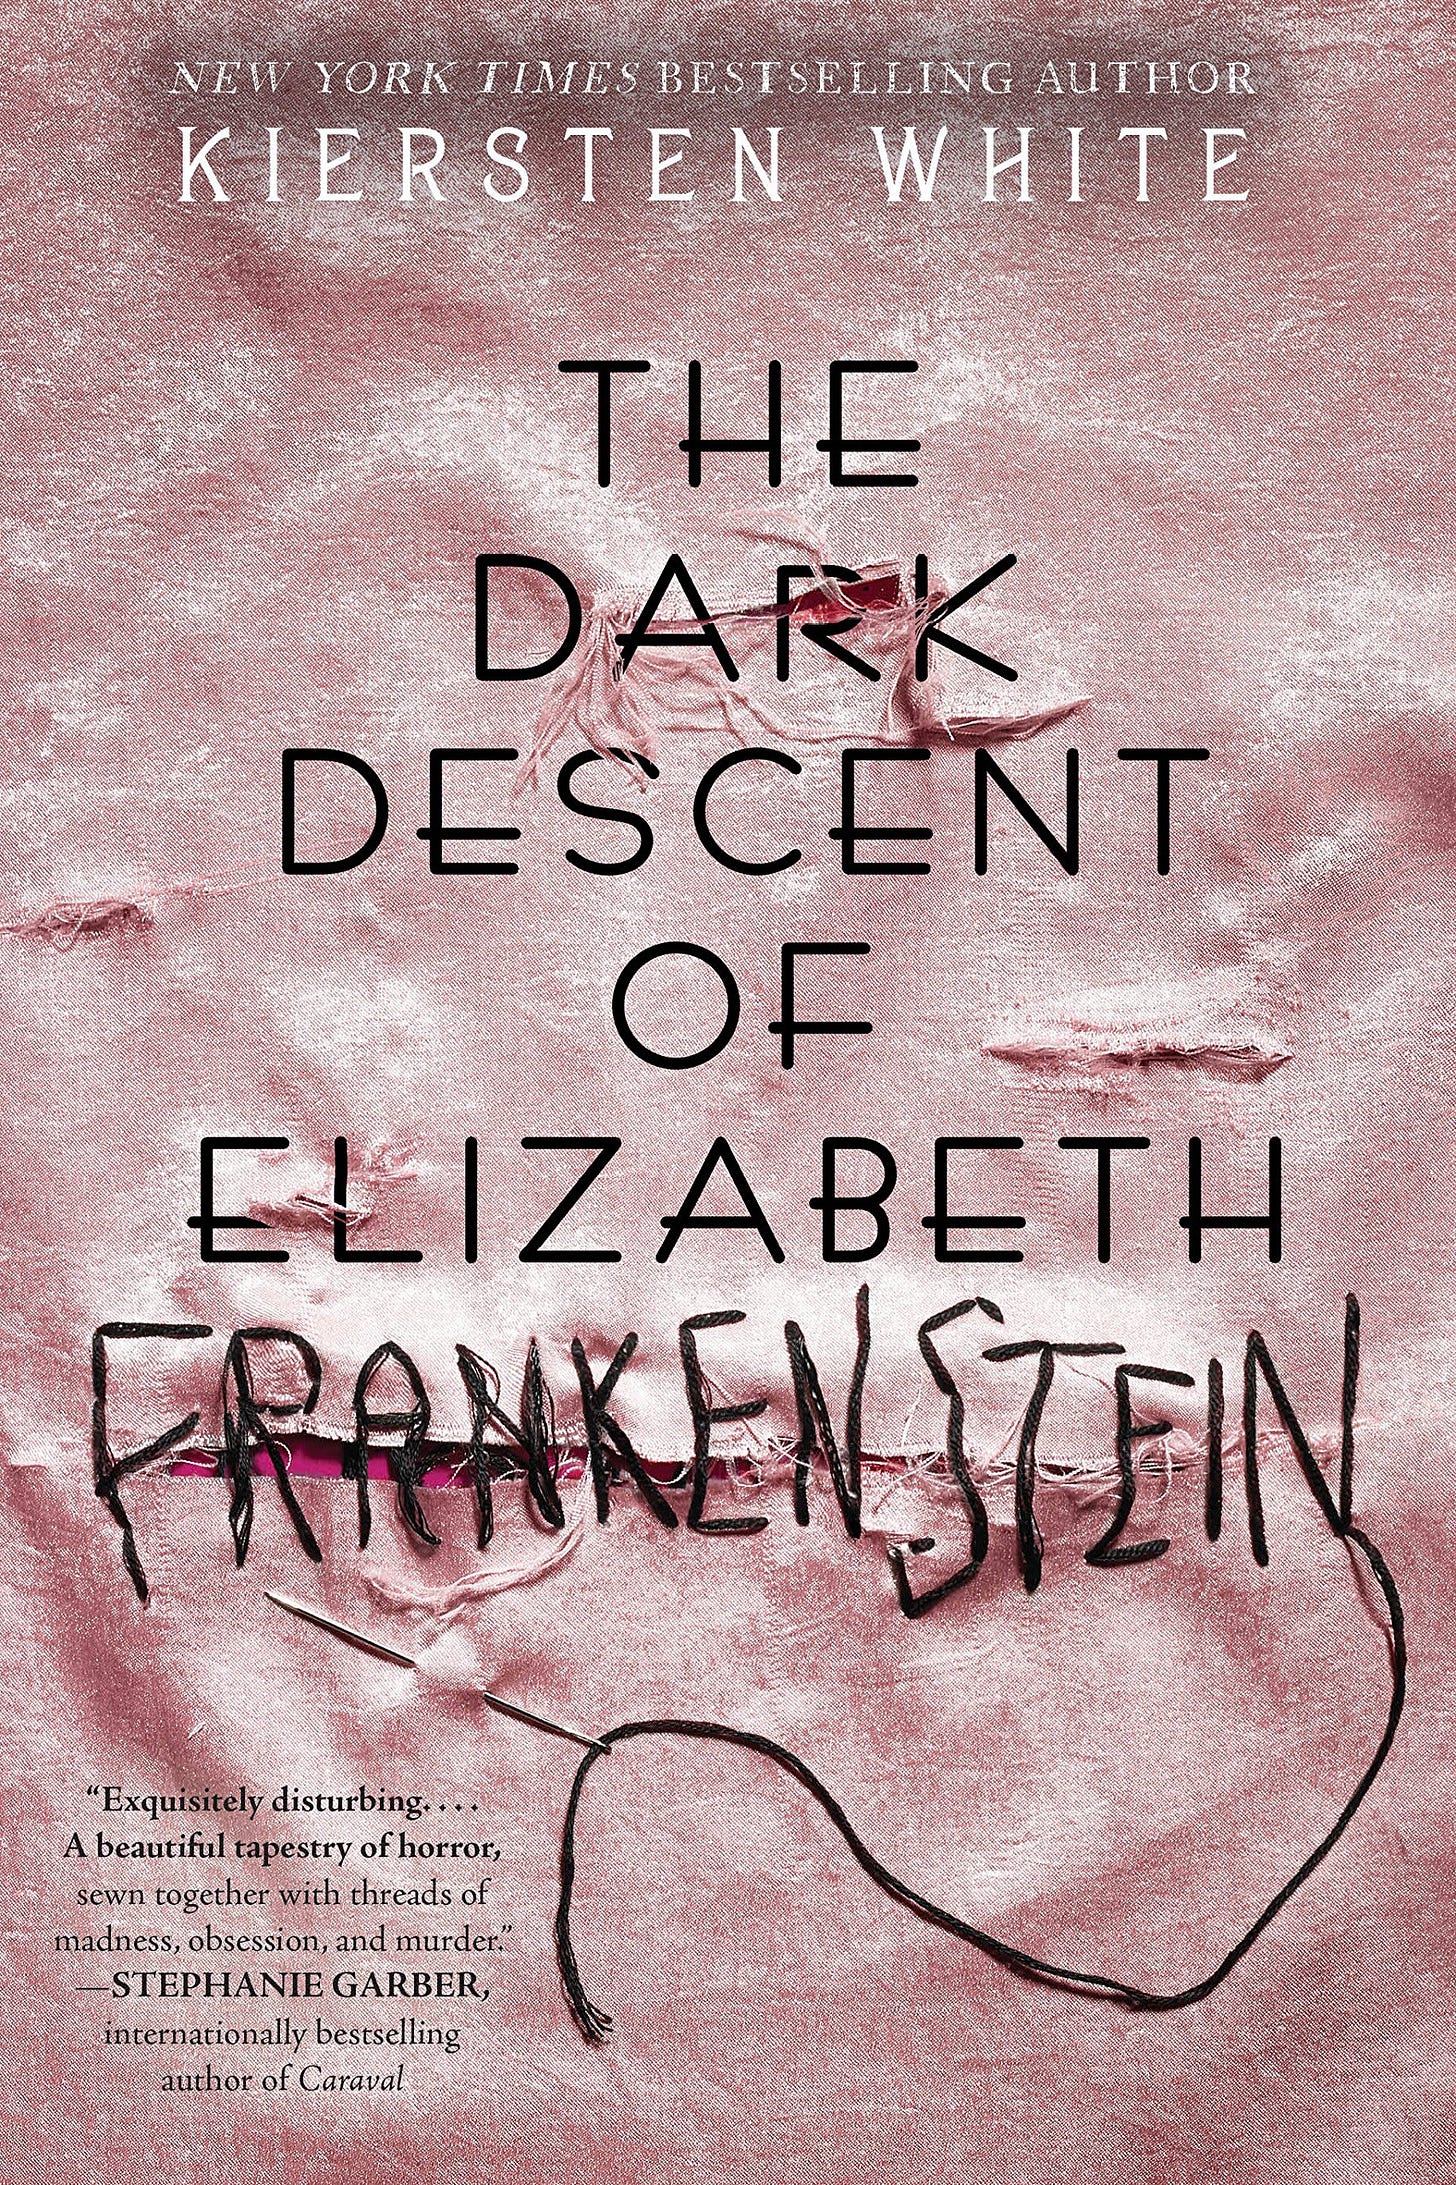 Image result for the dark descent of elizabeth frankenstein